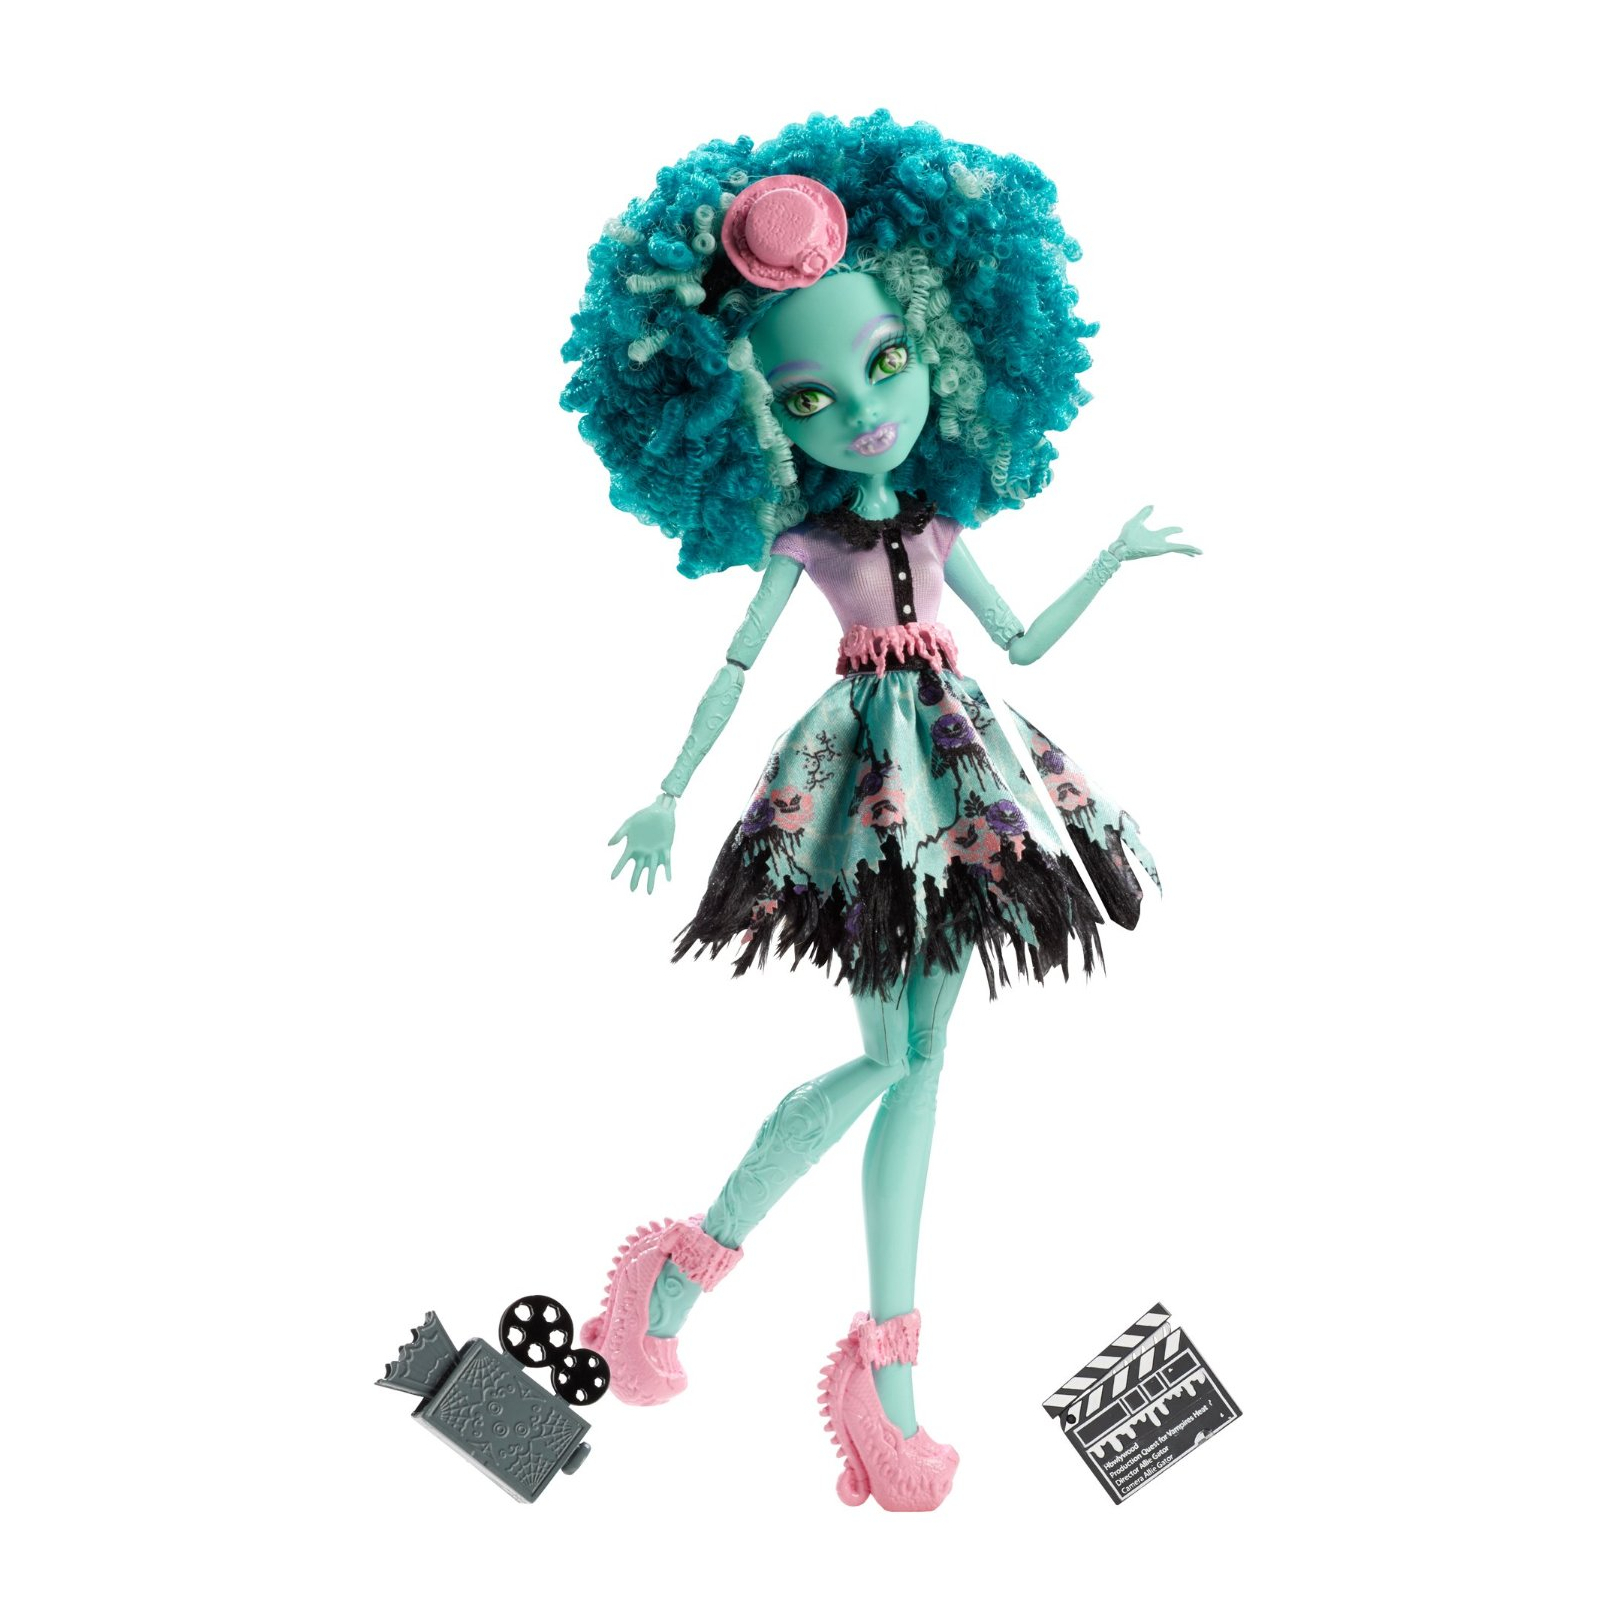 Кукла Monster High Хани Свомп из м/ф Страх, камера, мотор (BLX17-2) изображение 2